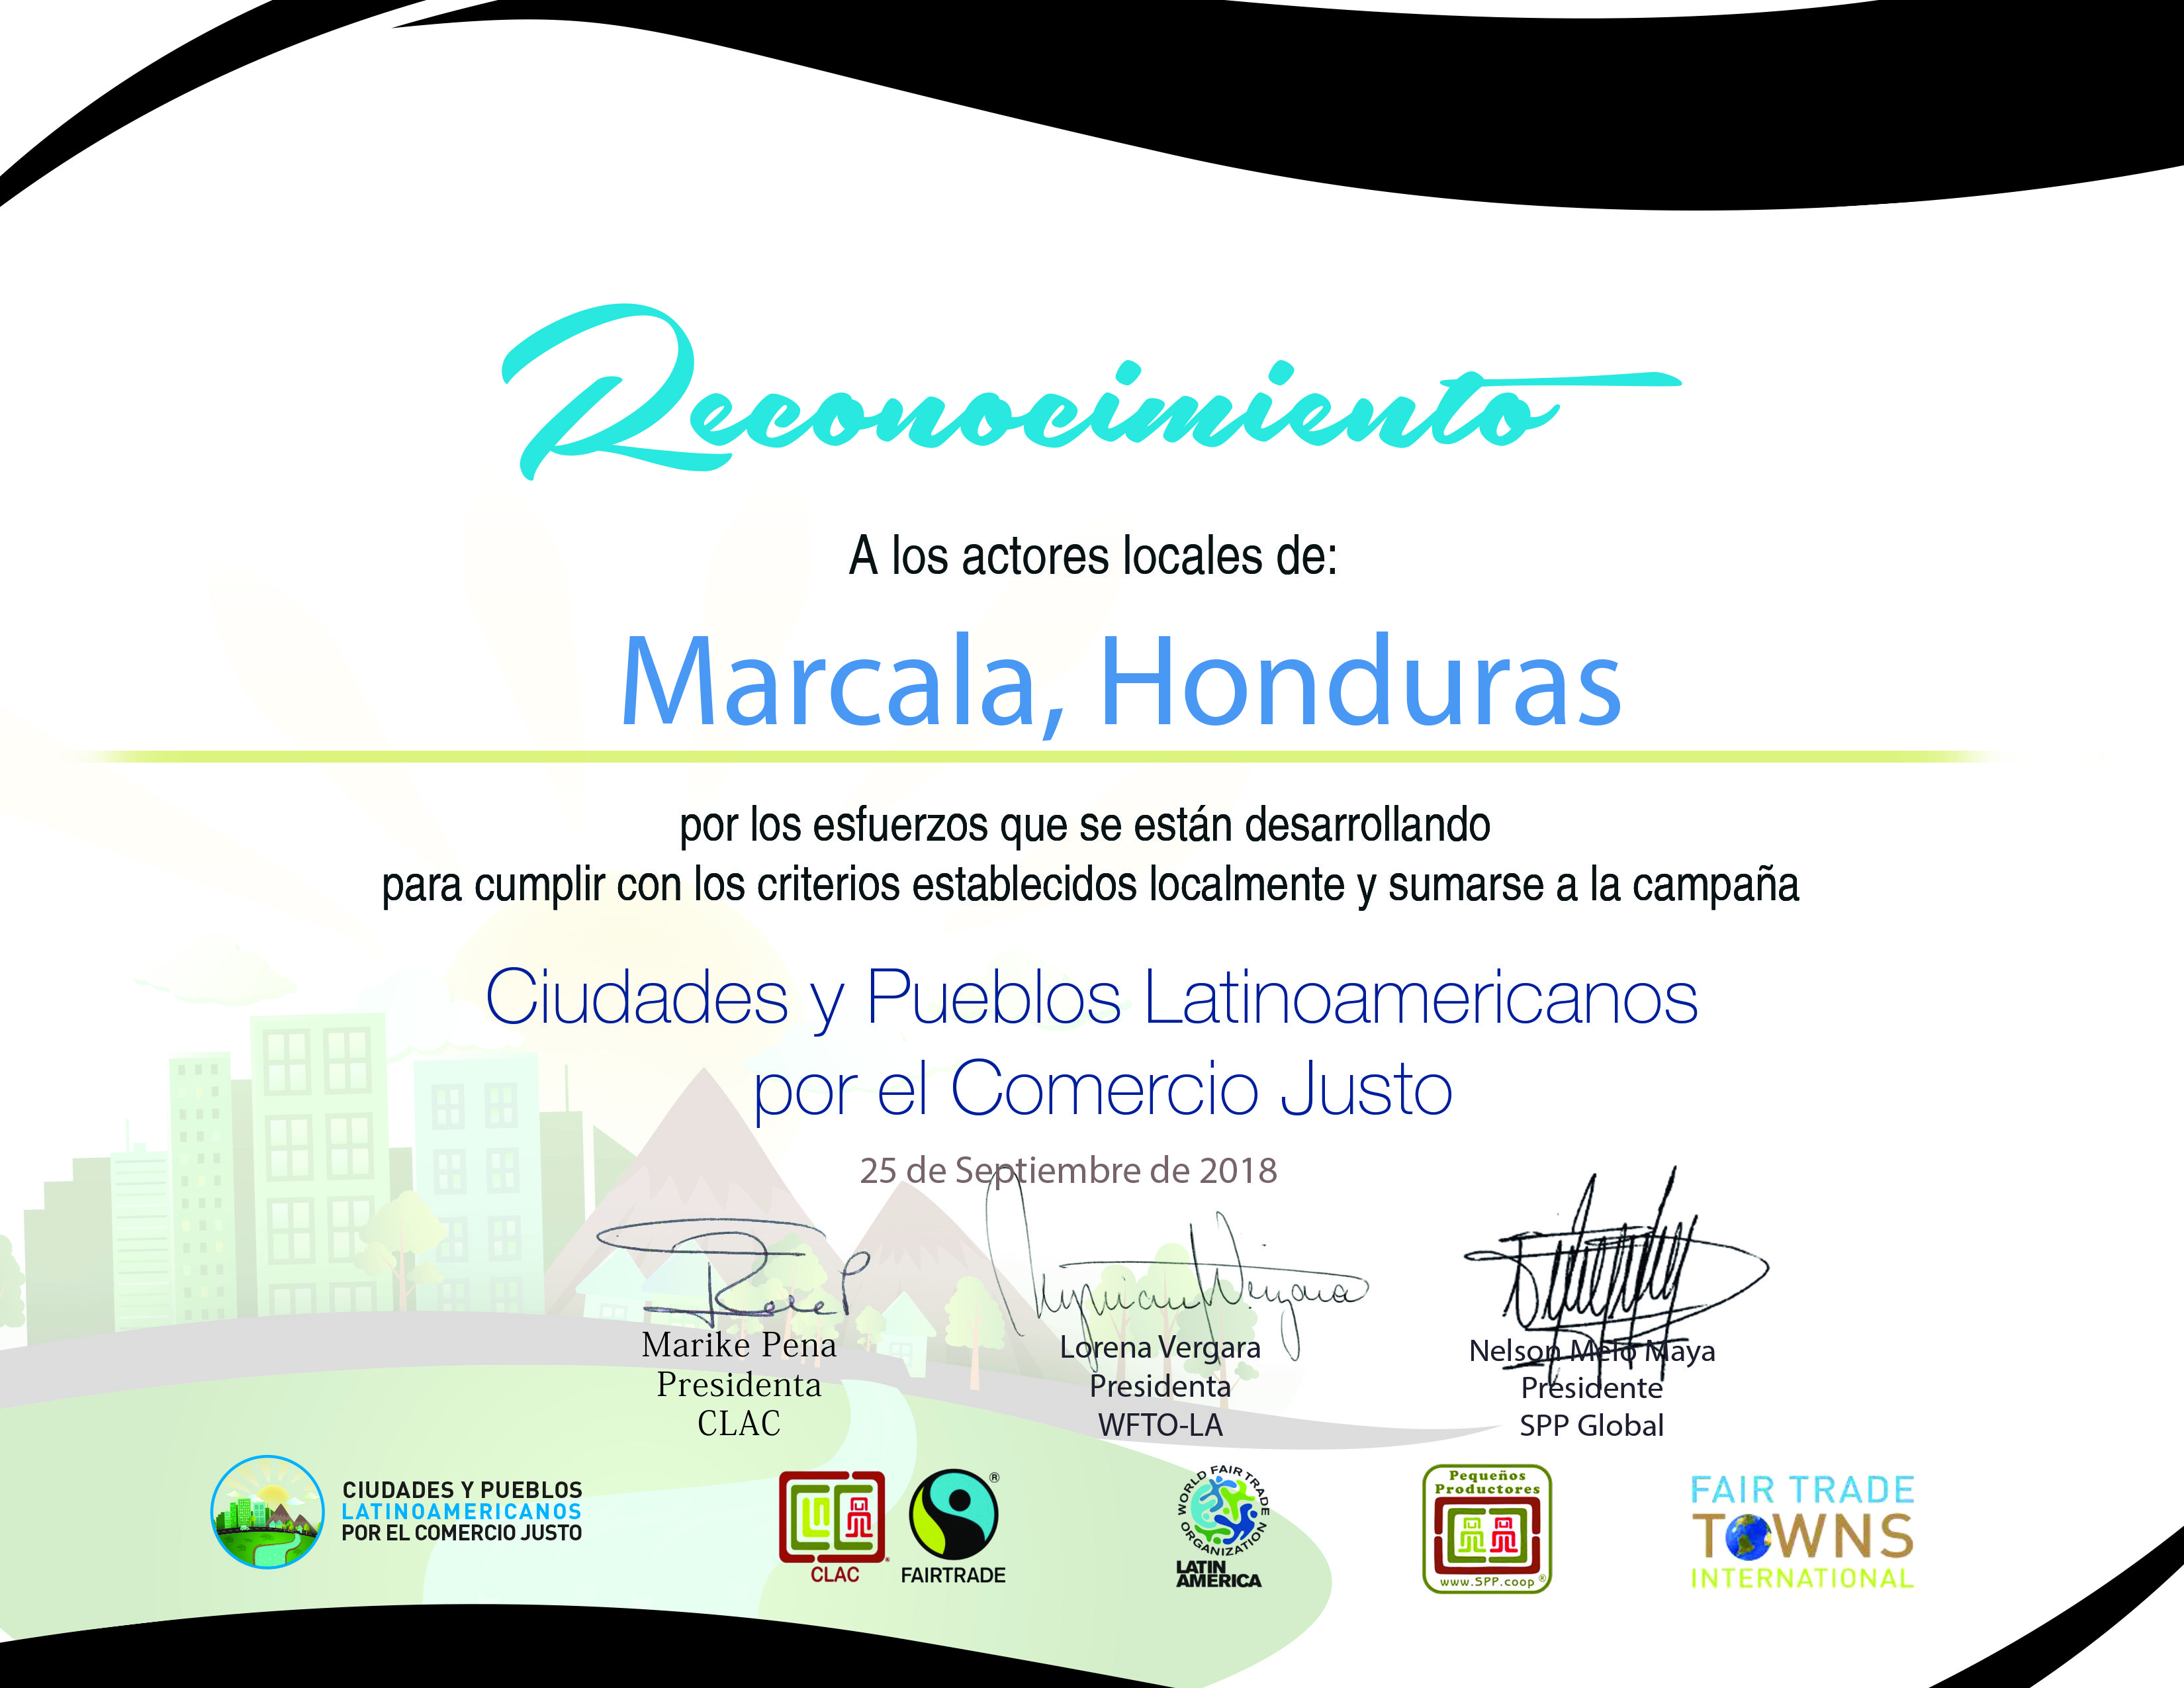 Marcala es es oficialmente reconocida como una Ciudad Comercio Justo